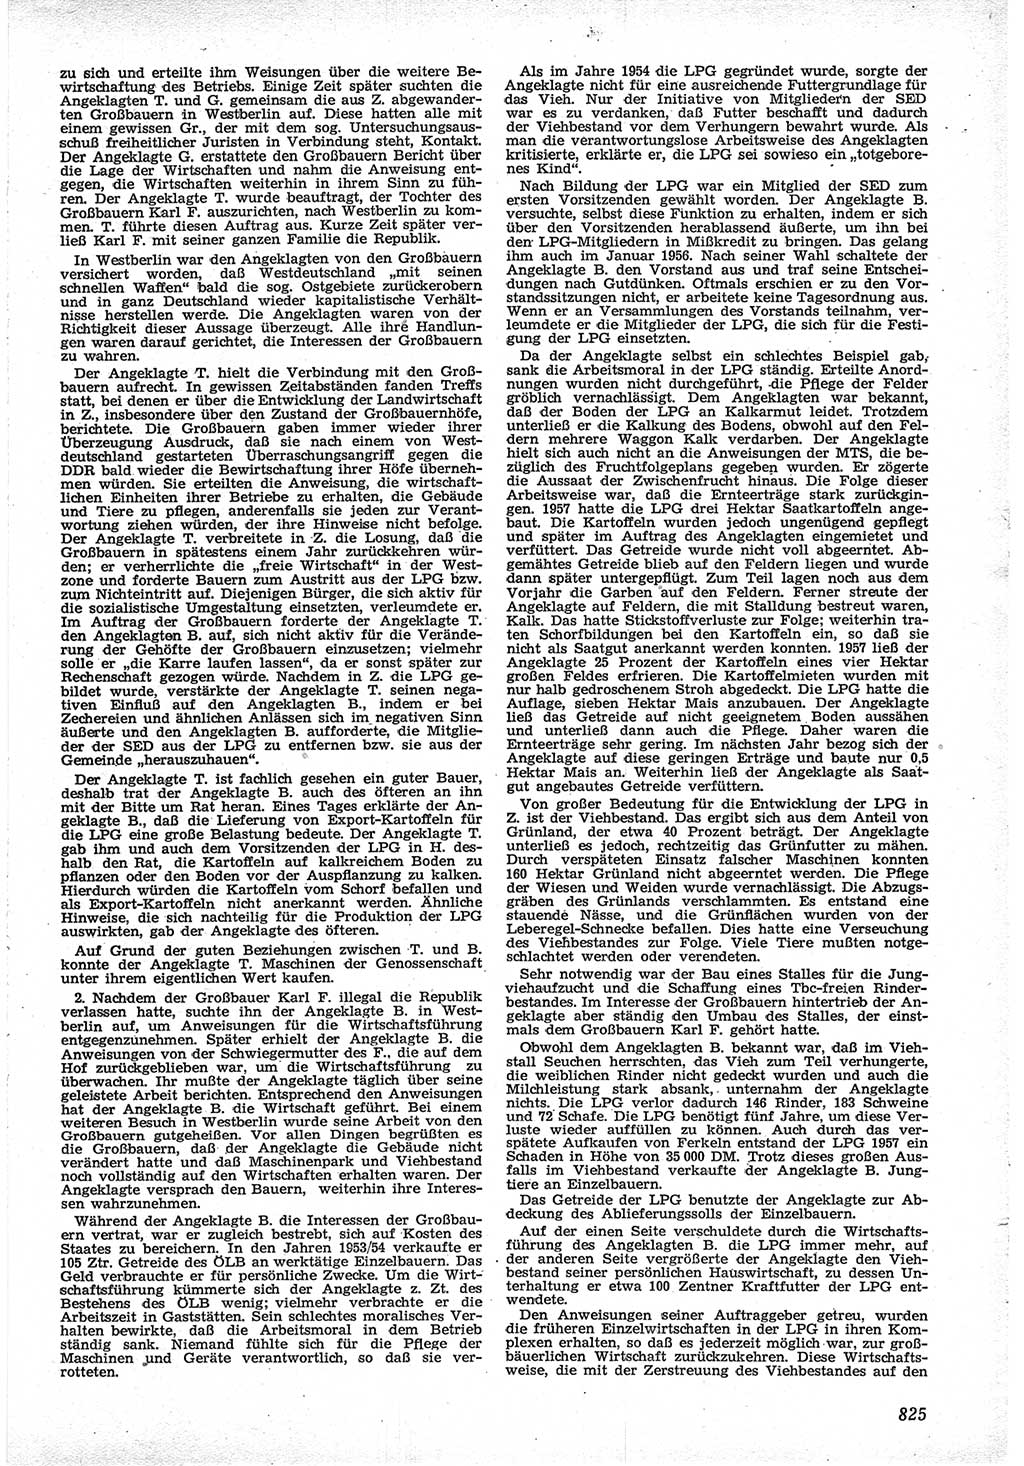 Neue Justiz (NJ), Zeitschrift für Recht und Rechtswissenschaft [Deutsche Demokratische Republik (DDR)], 12. Jahrgang 1958, Seite 825 (NJ DDR 1958, S. 825)